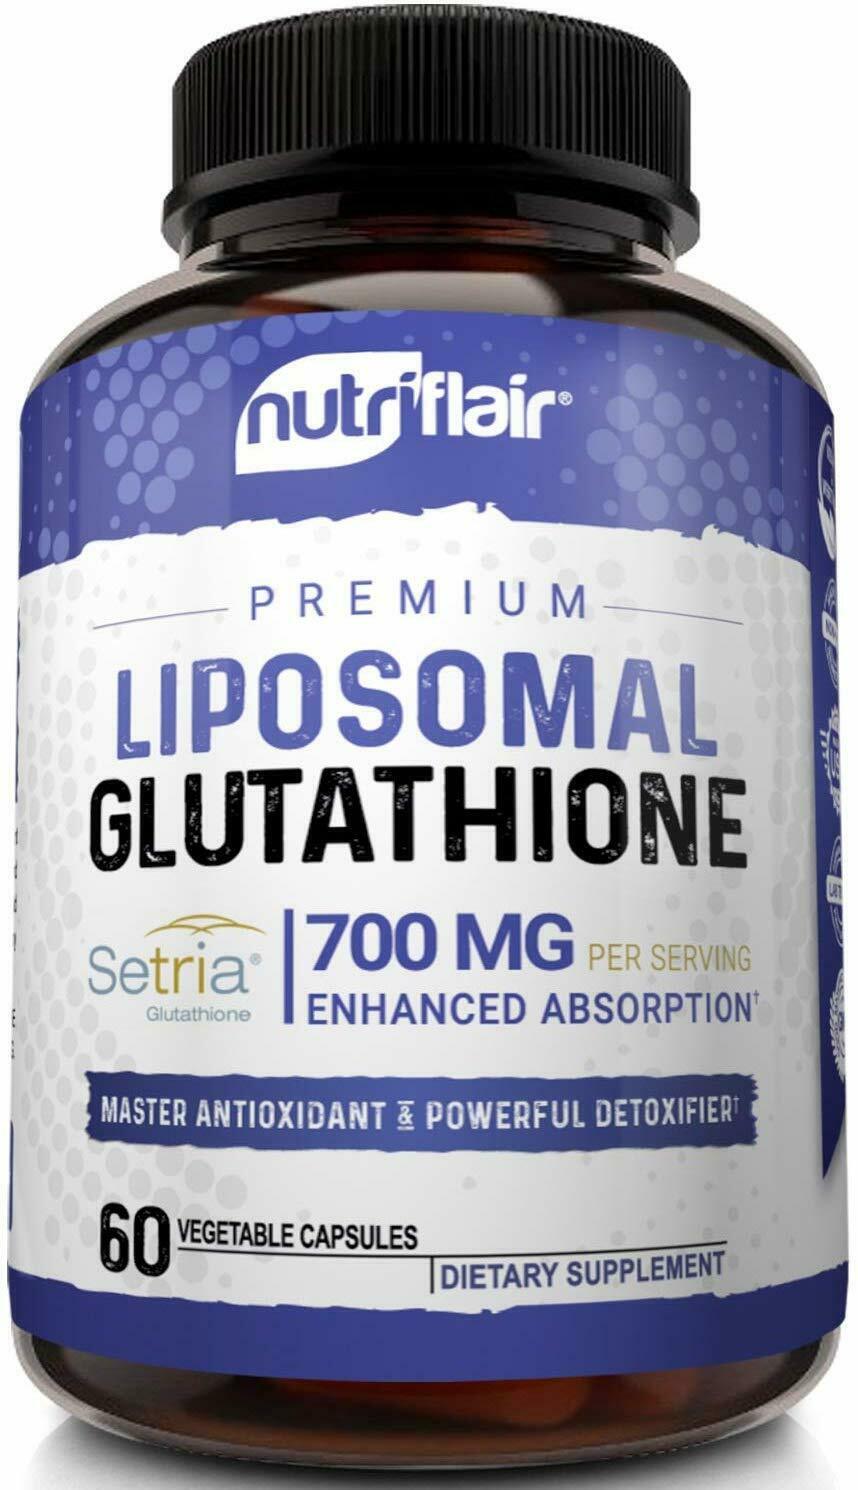 NutriFlair Setria Liposomal Glutathione 700mg - Pure Reduced L-Glutathione Detox